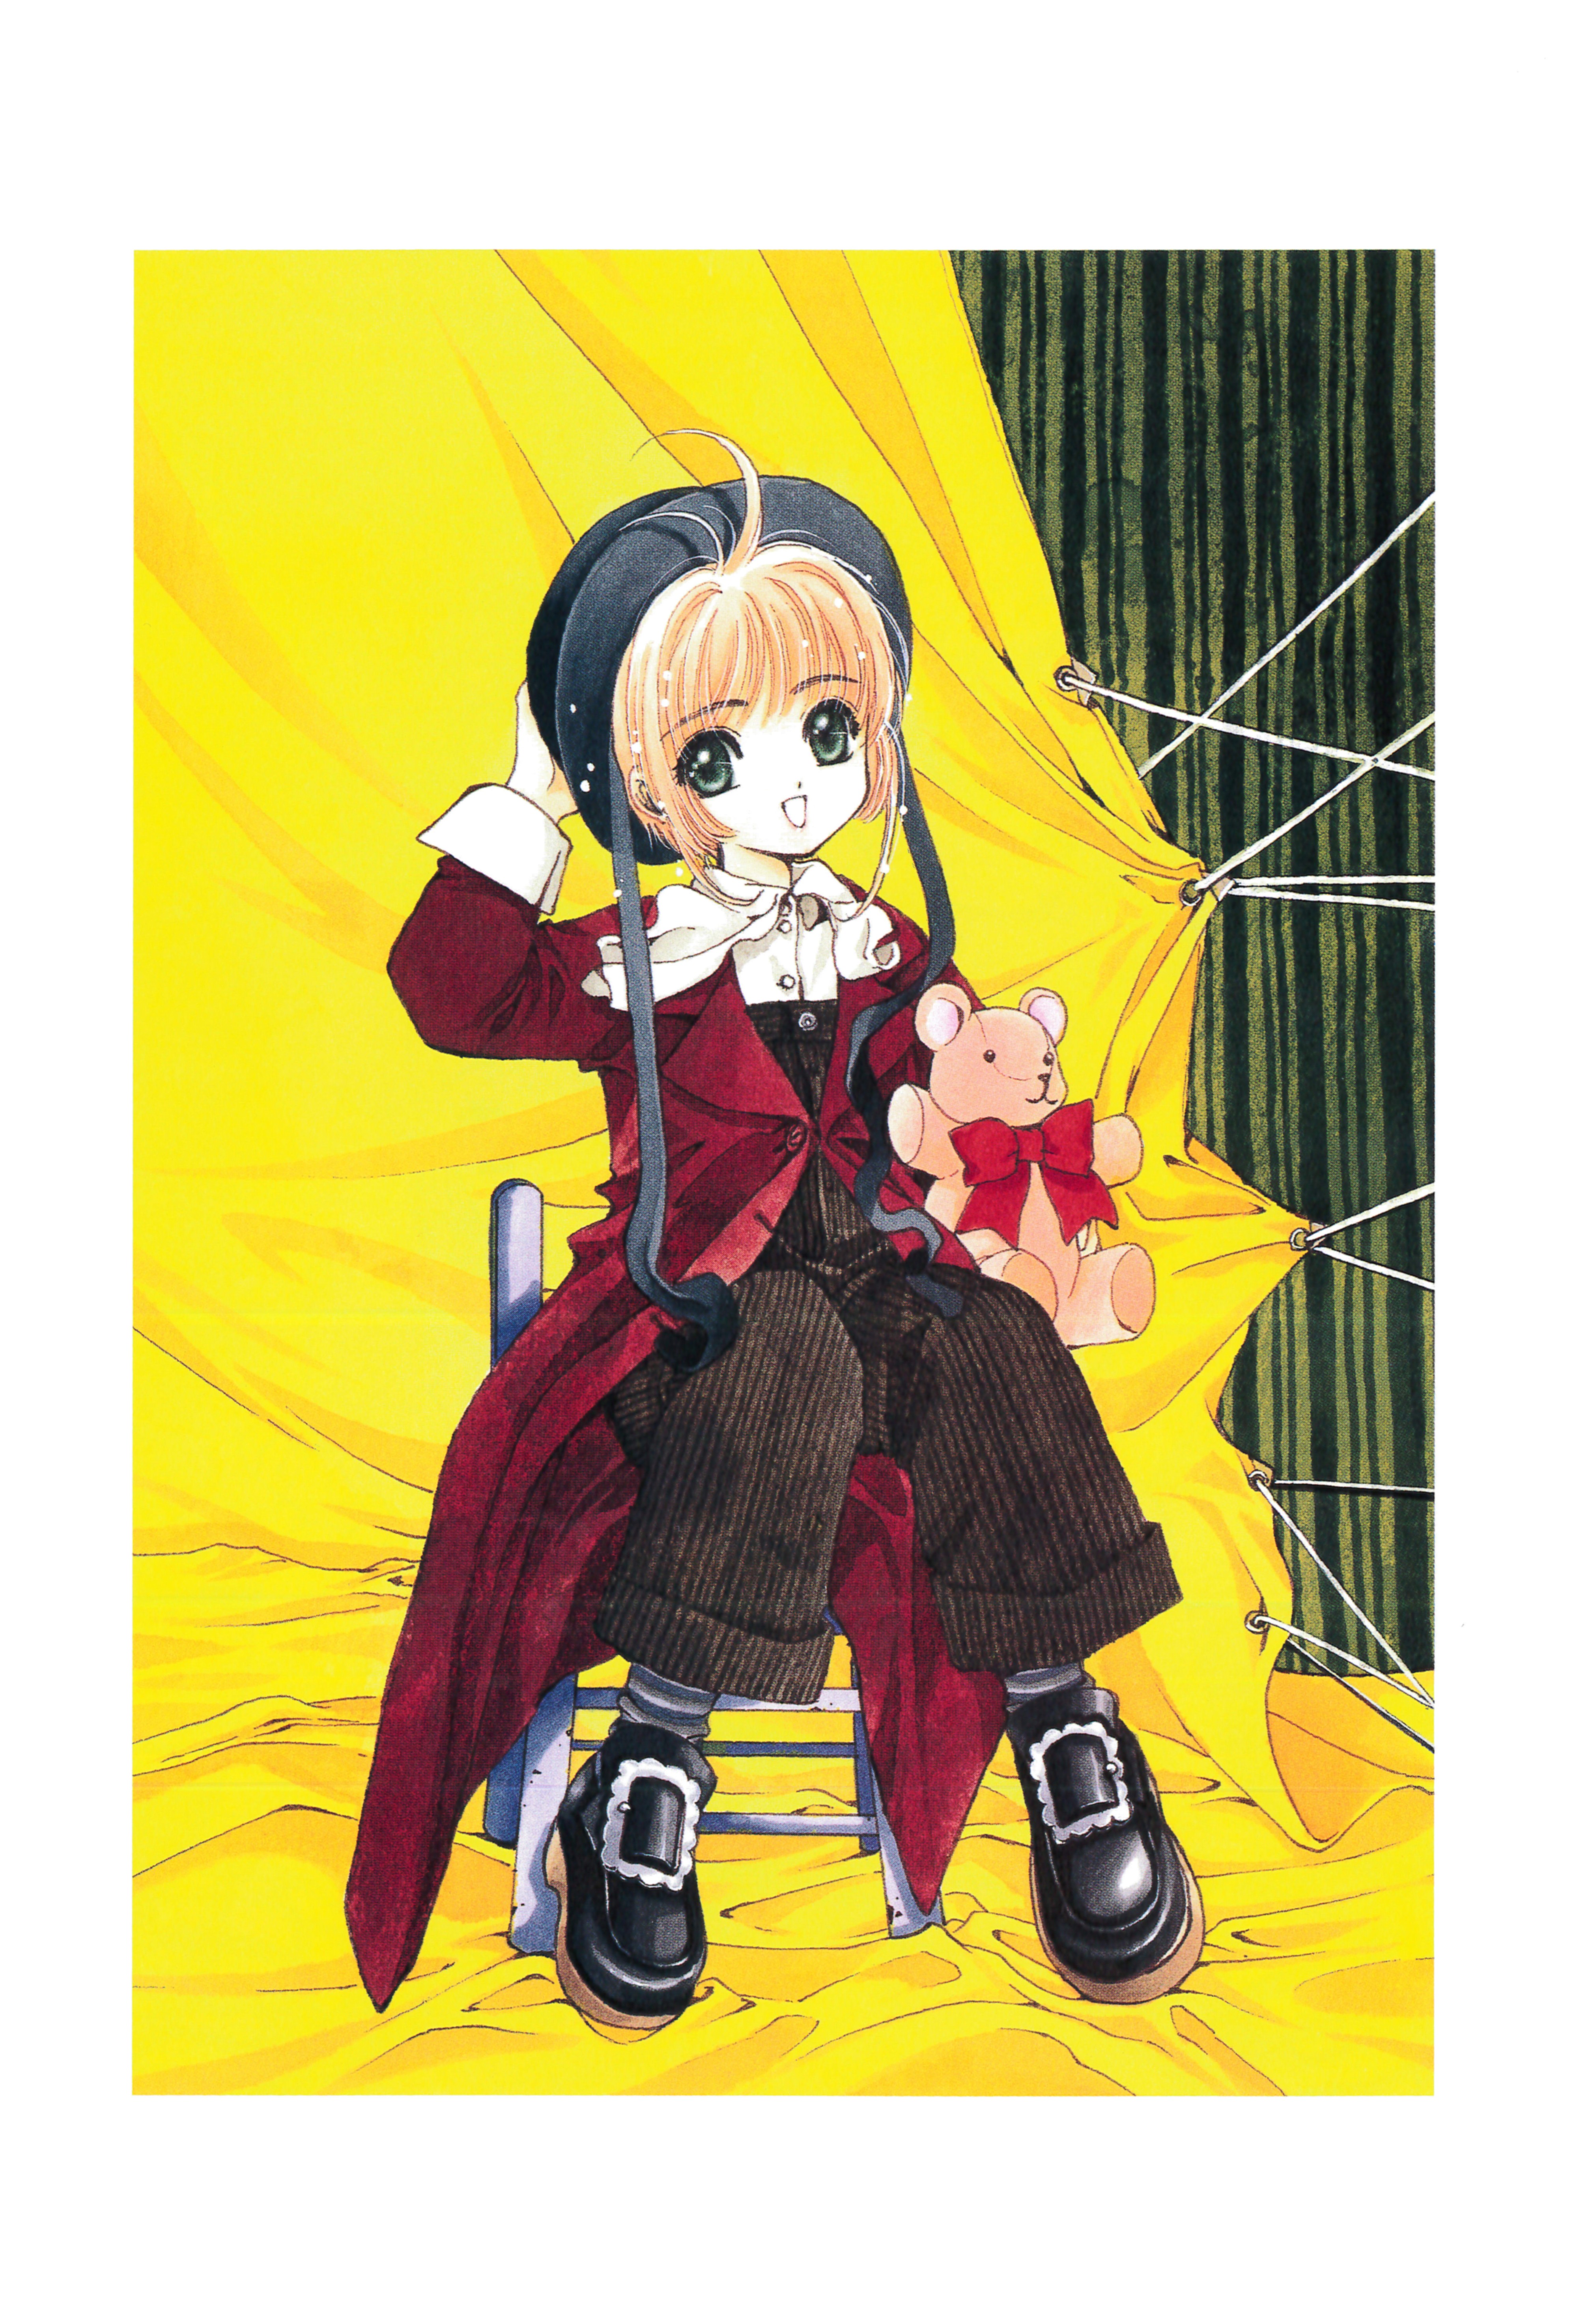 【画集】 [CLAMP] 魔卡少女樱 カードキャプターさくら 连载20周年纪念画集